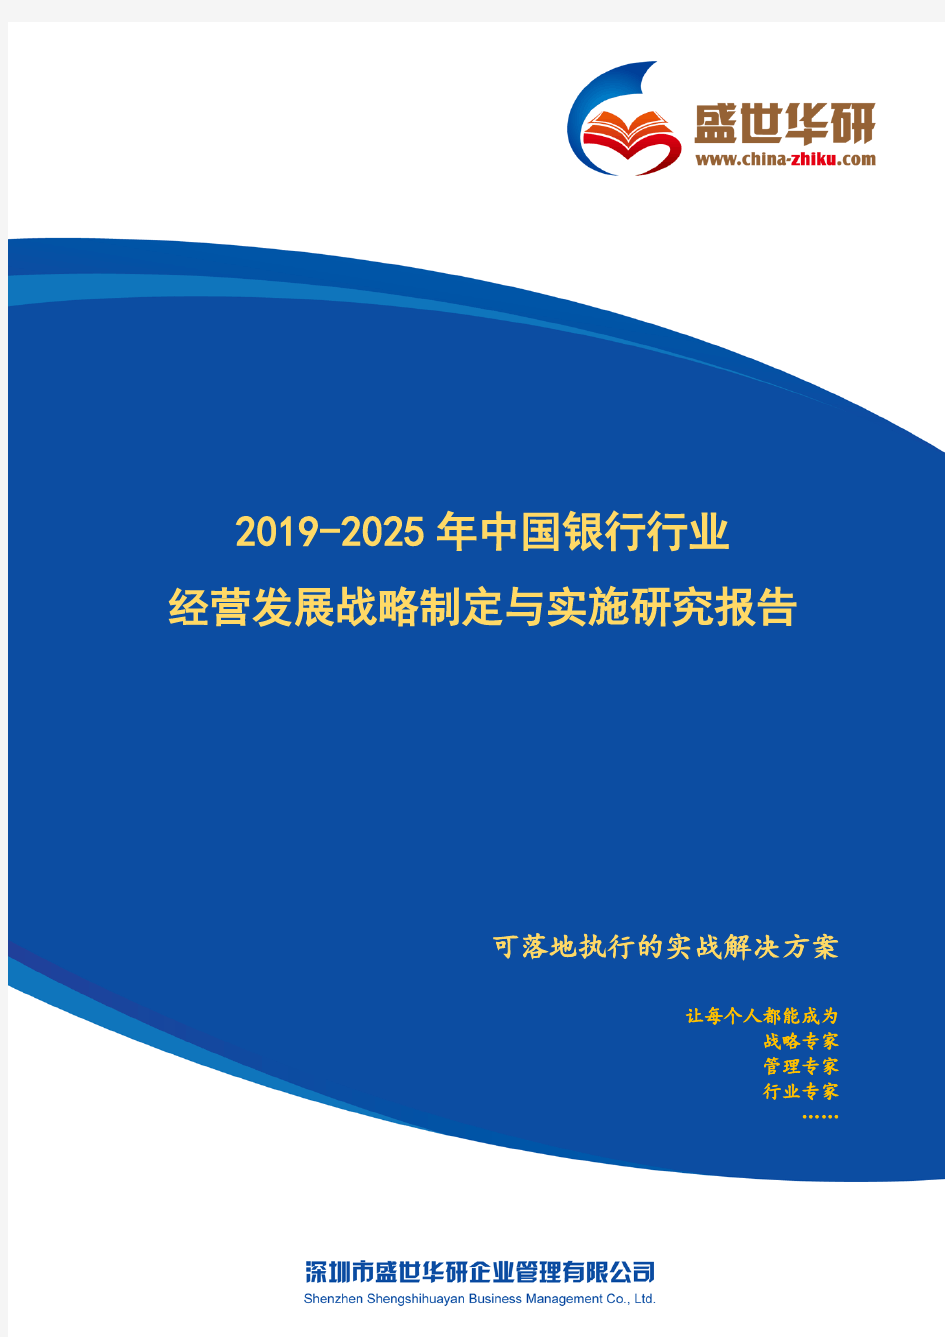 【完整版】2019-2025年中国银行行业经营发展战略及规划制定与实施研究报告